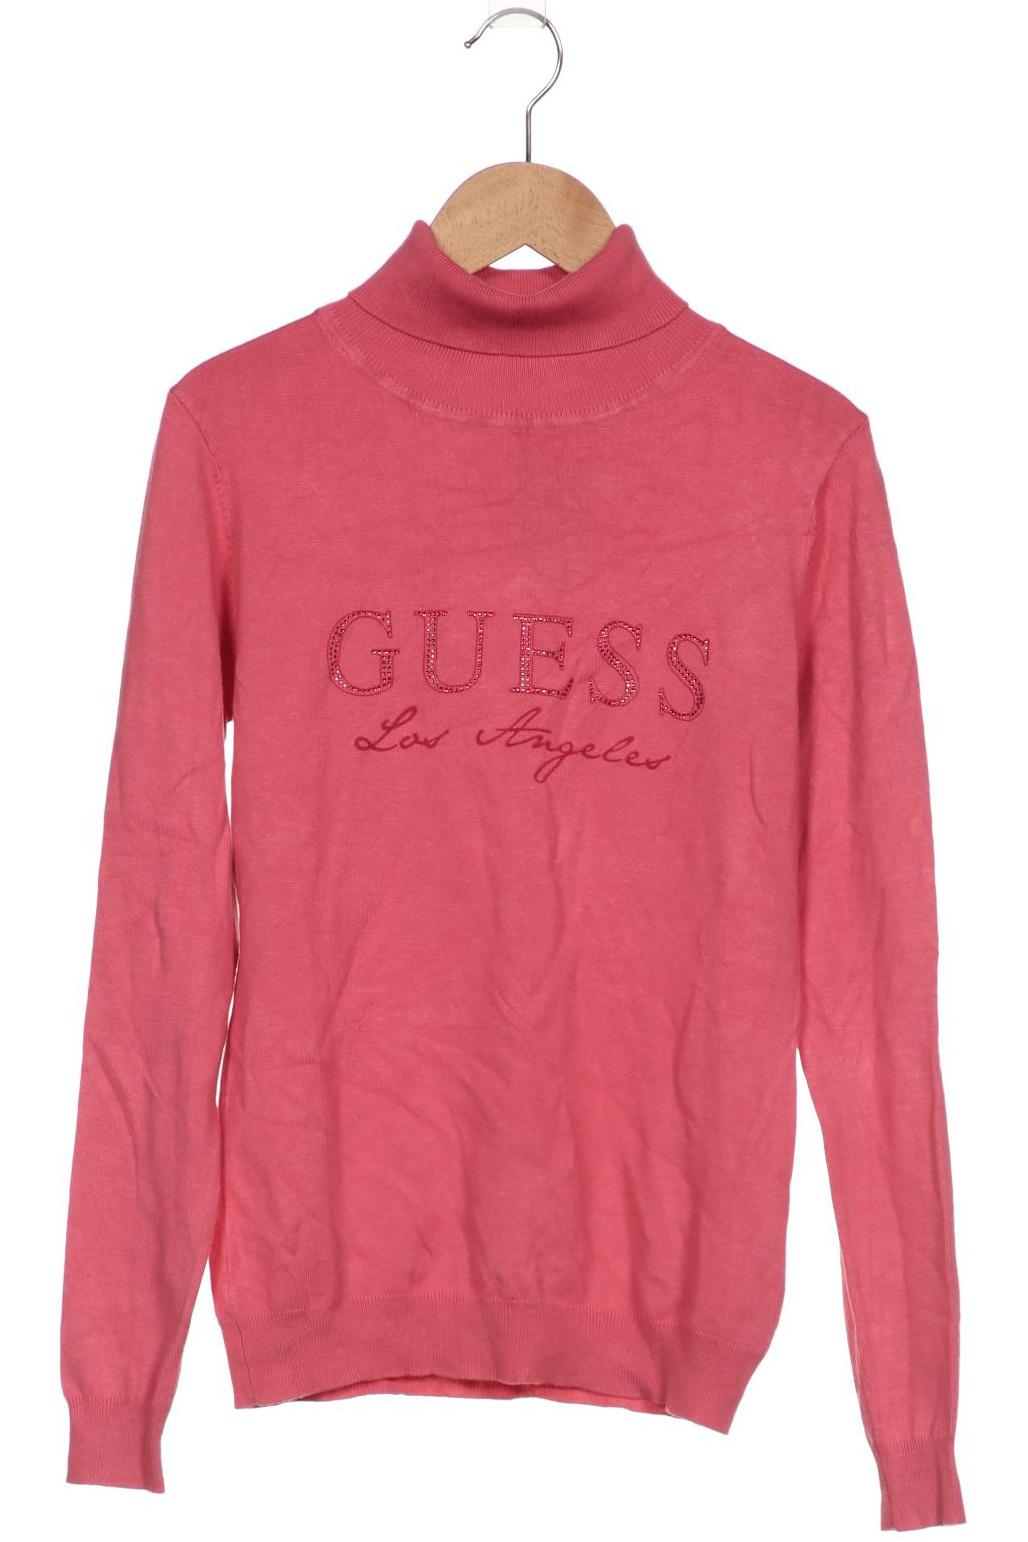 Guess Damen Pullover, pink, Gr. 6 von Guess